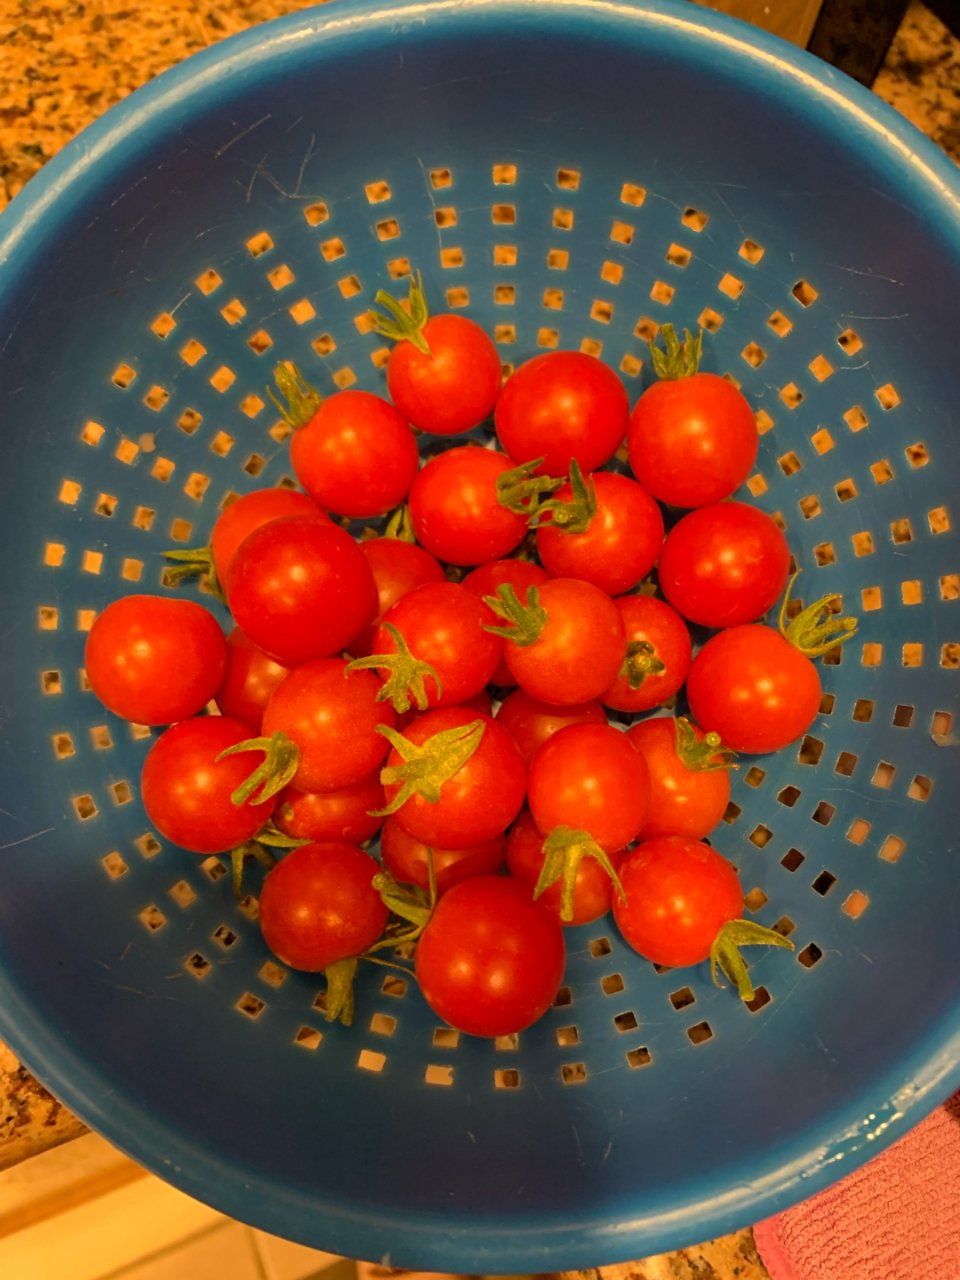 后院的西红柿🍅...